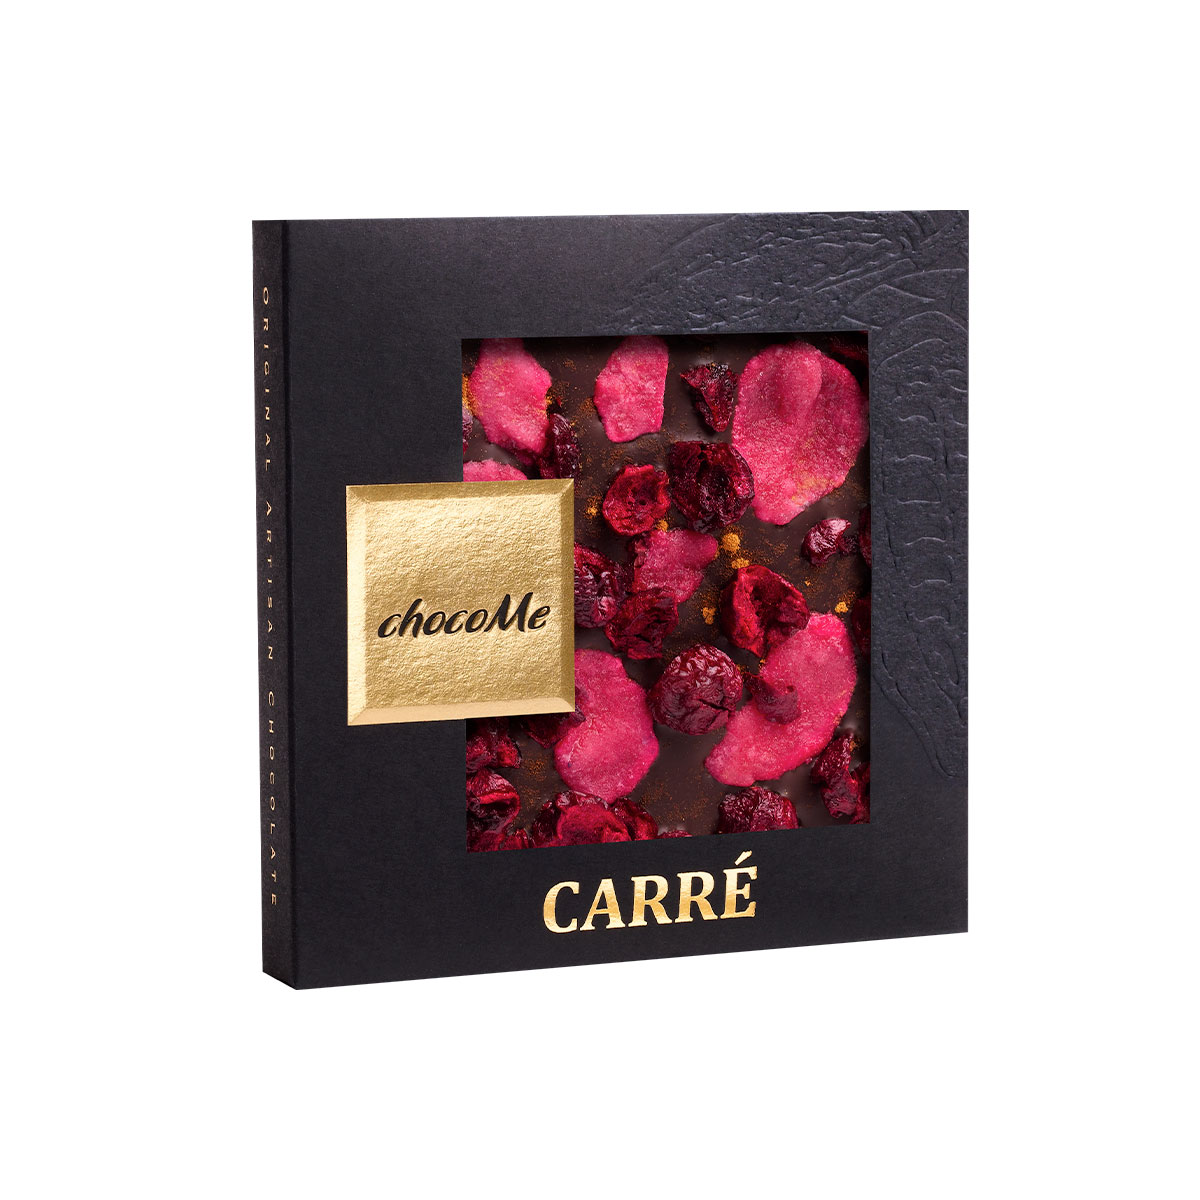 Tafelschokoladen mit kandierten Rosenblättern und Zimt, Carré - chocoMe 50g